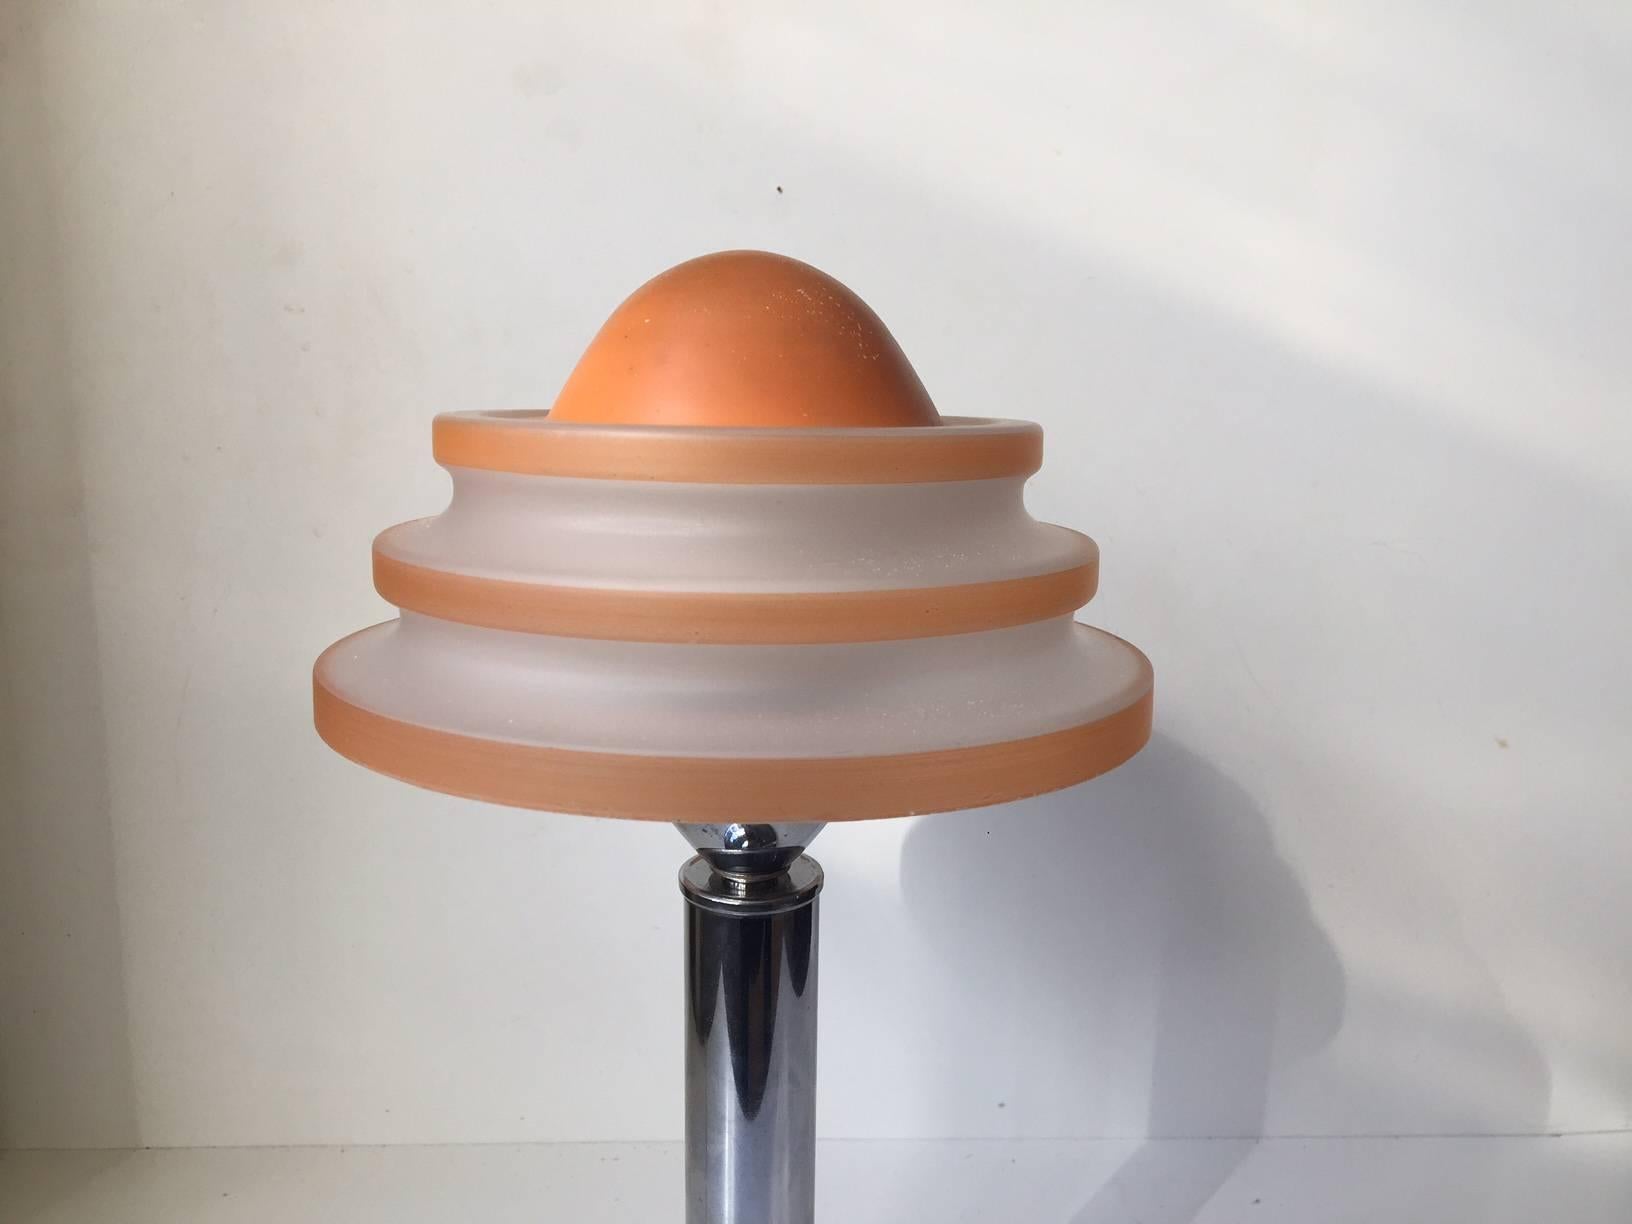 Steel Danish Art Deco Table Lamp 'Fried Egg' in Chrome & Glass, Fog & Morup, 1930s